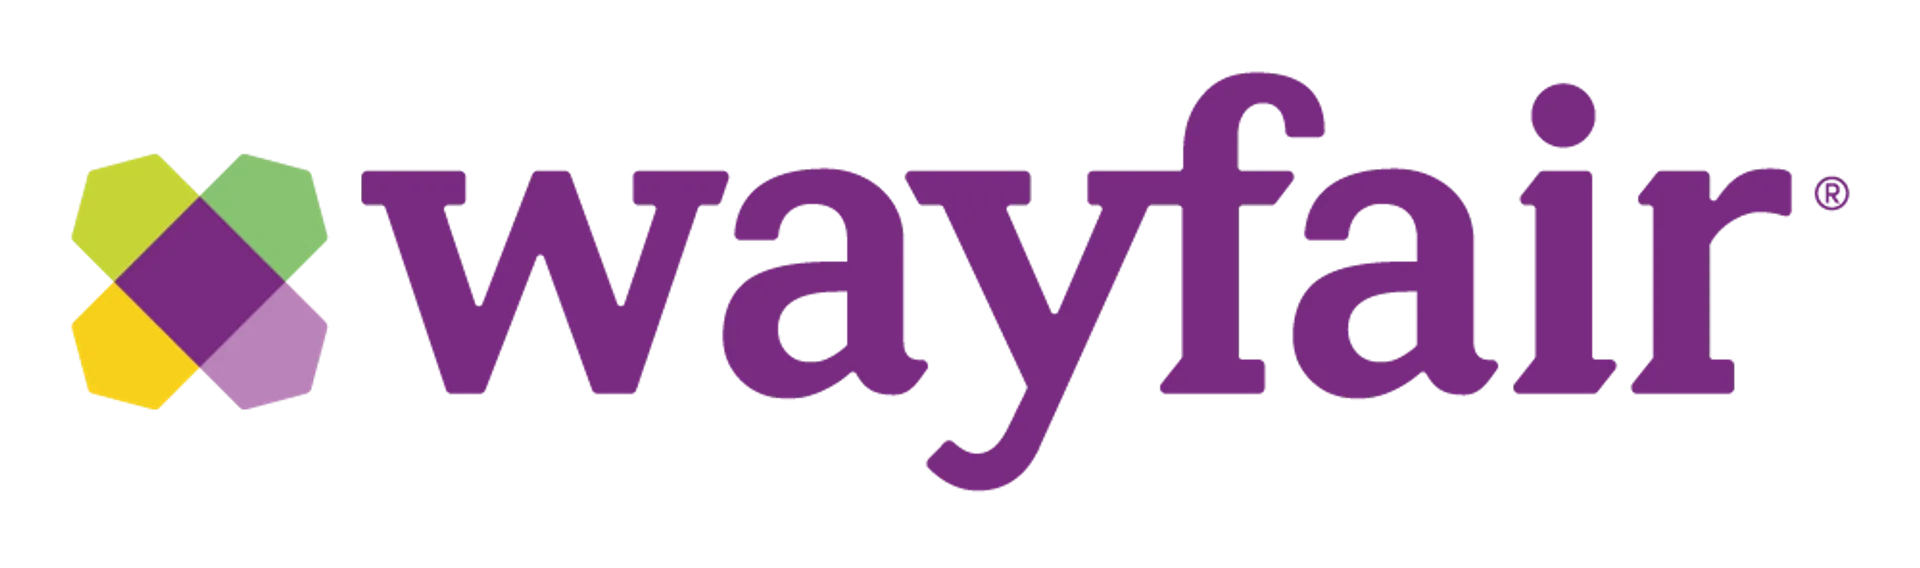 WAYFAIR logo